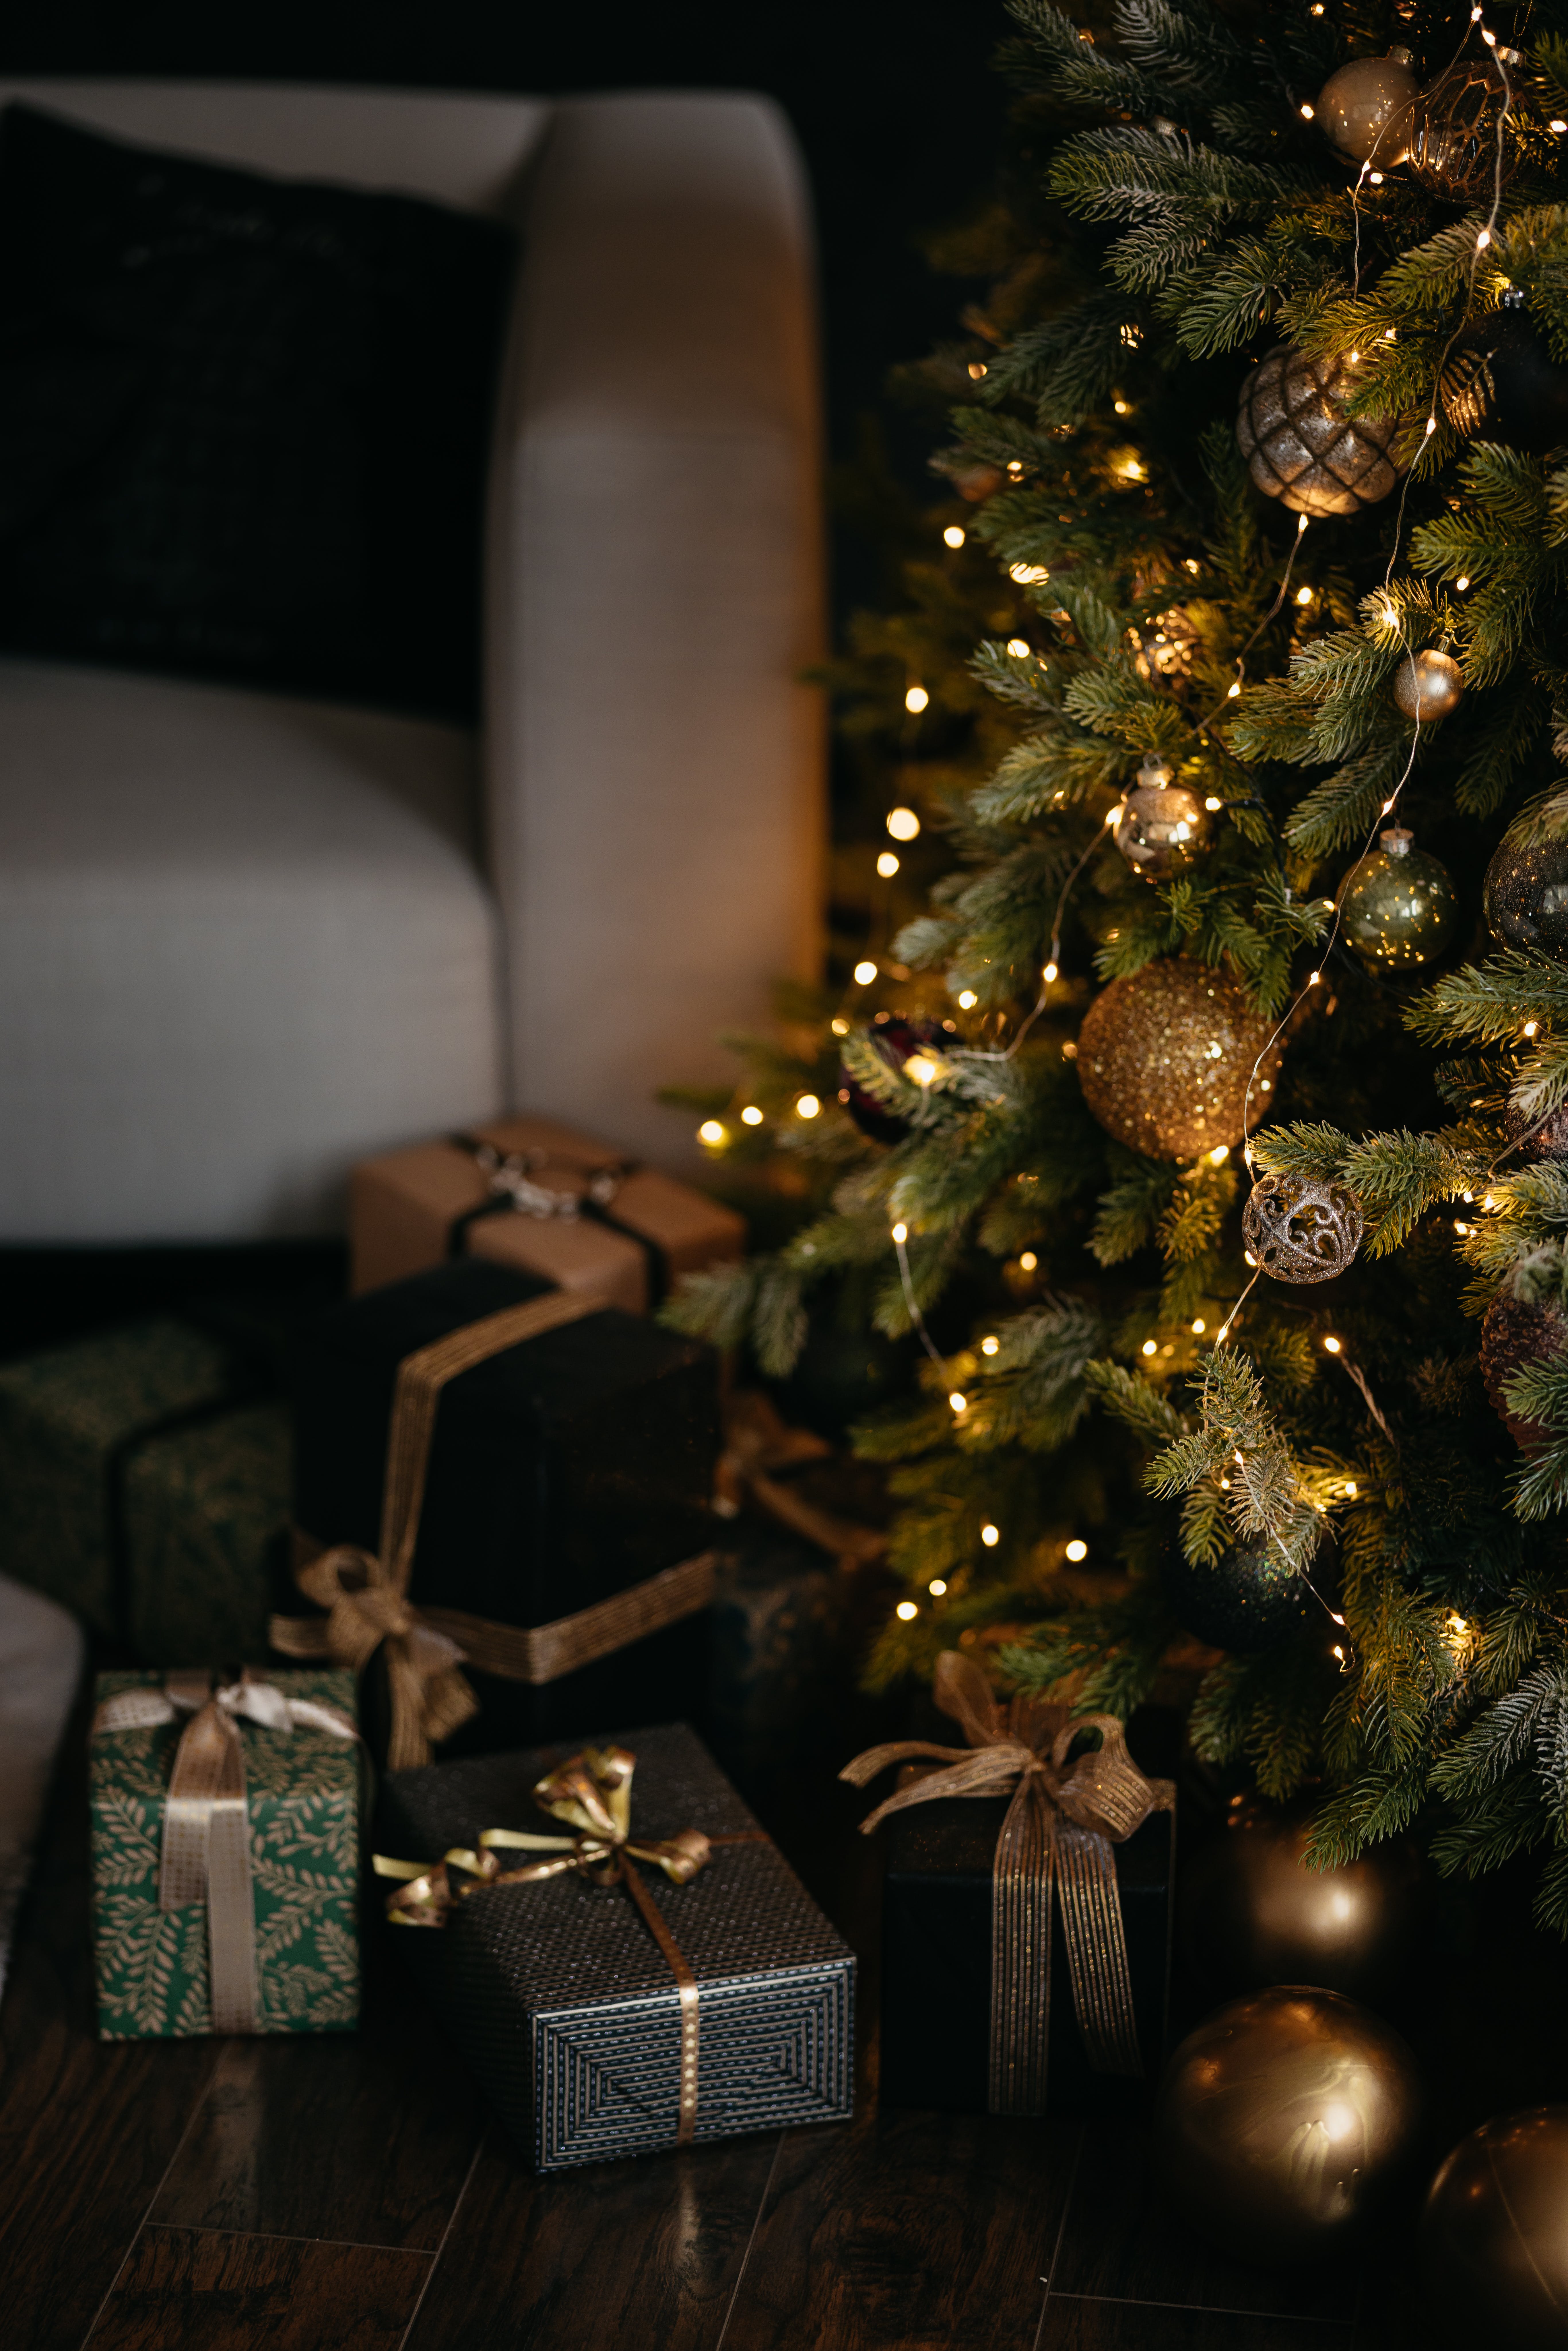 Ein Weihnachtsbaum und Geschenke | Quelle: Pexels